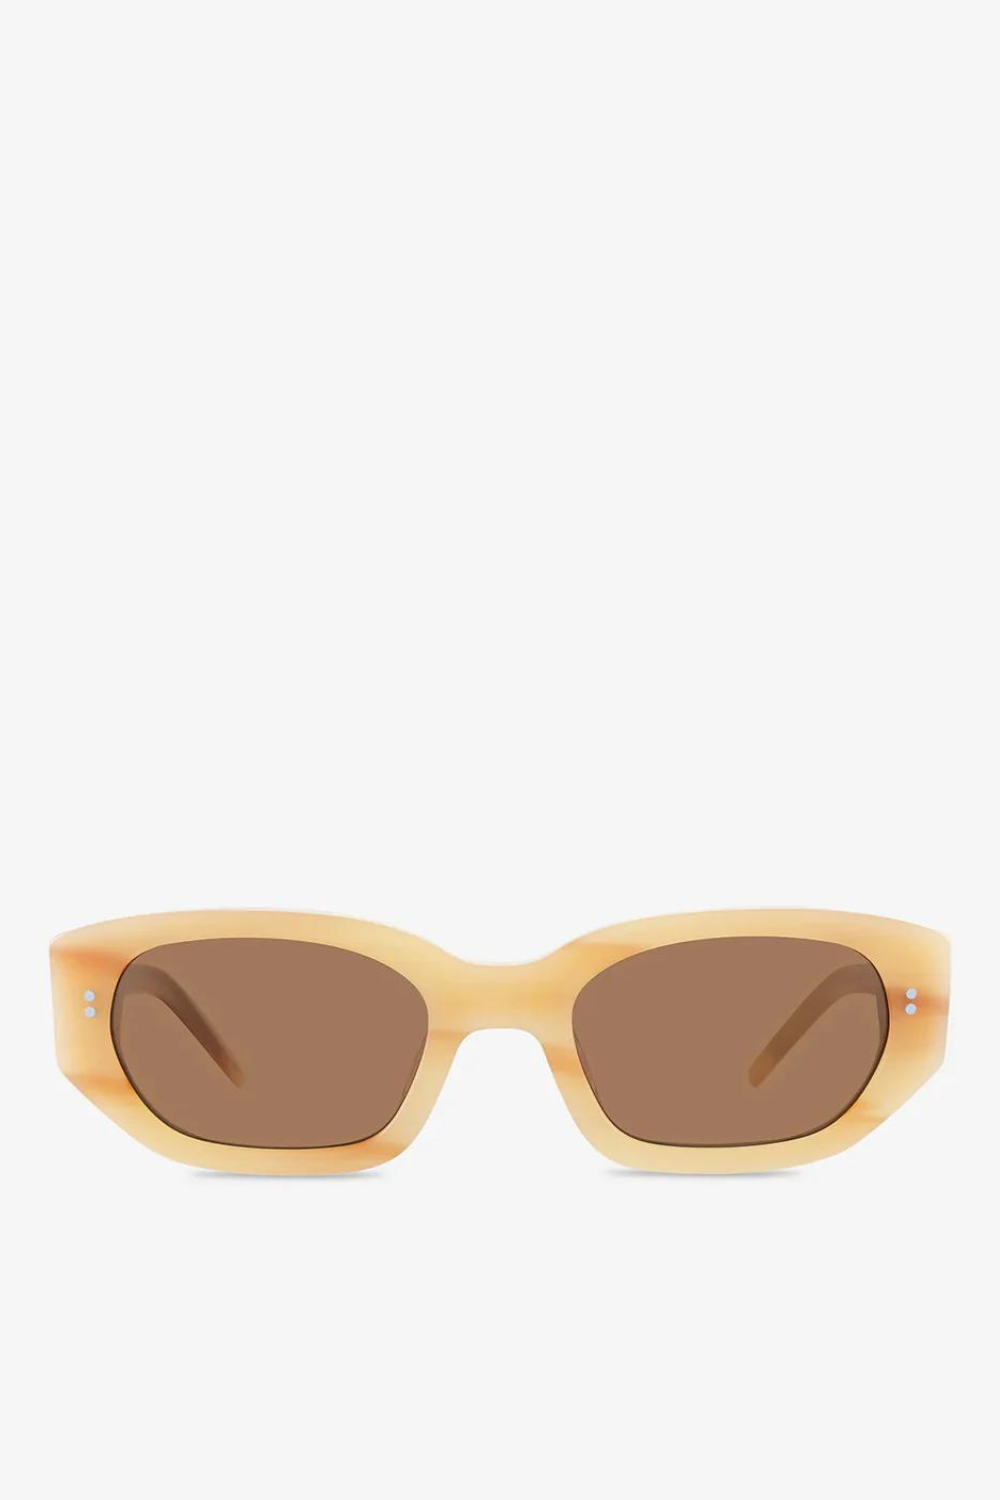 Luna Sunglasses in Blonde